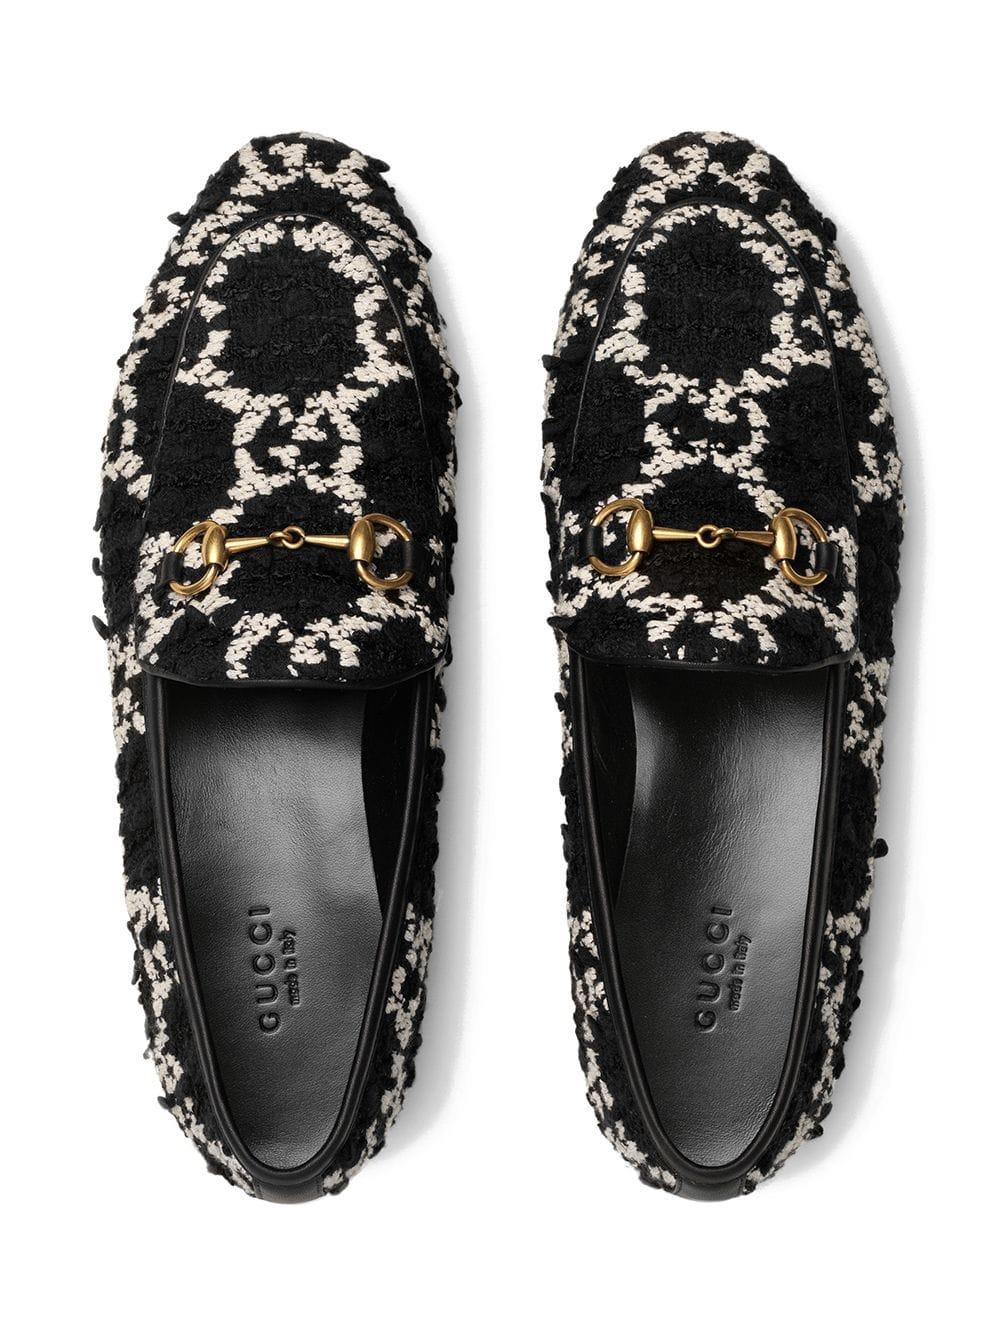 Gucci Jordaan Tweed Loafers in gg Tweed (Black) - Save 9% - Lyst